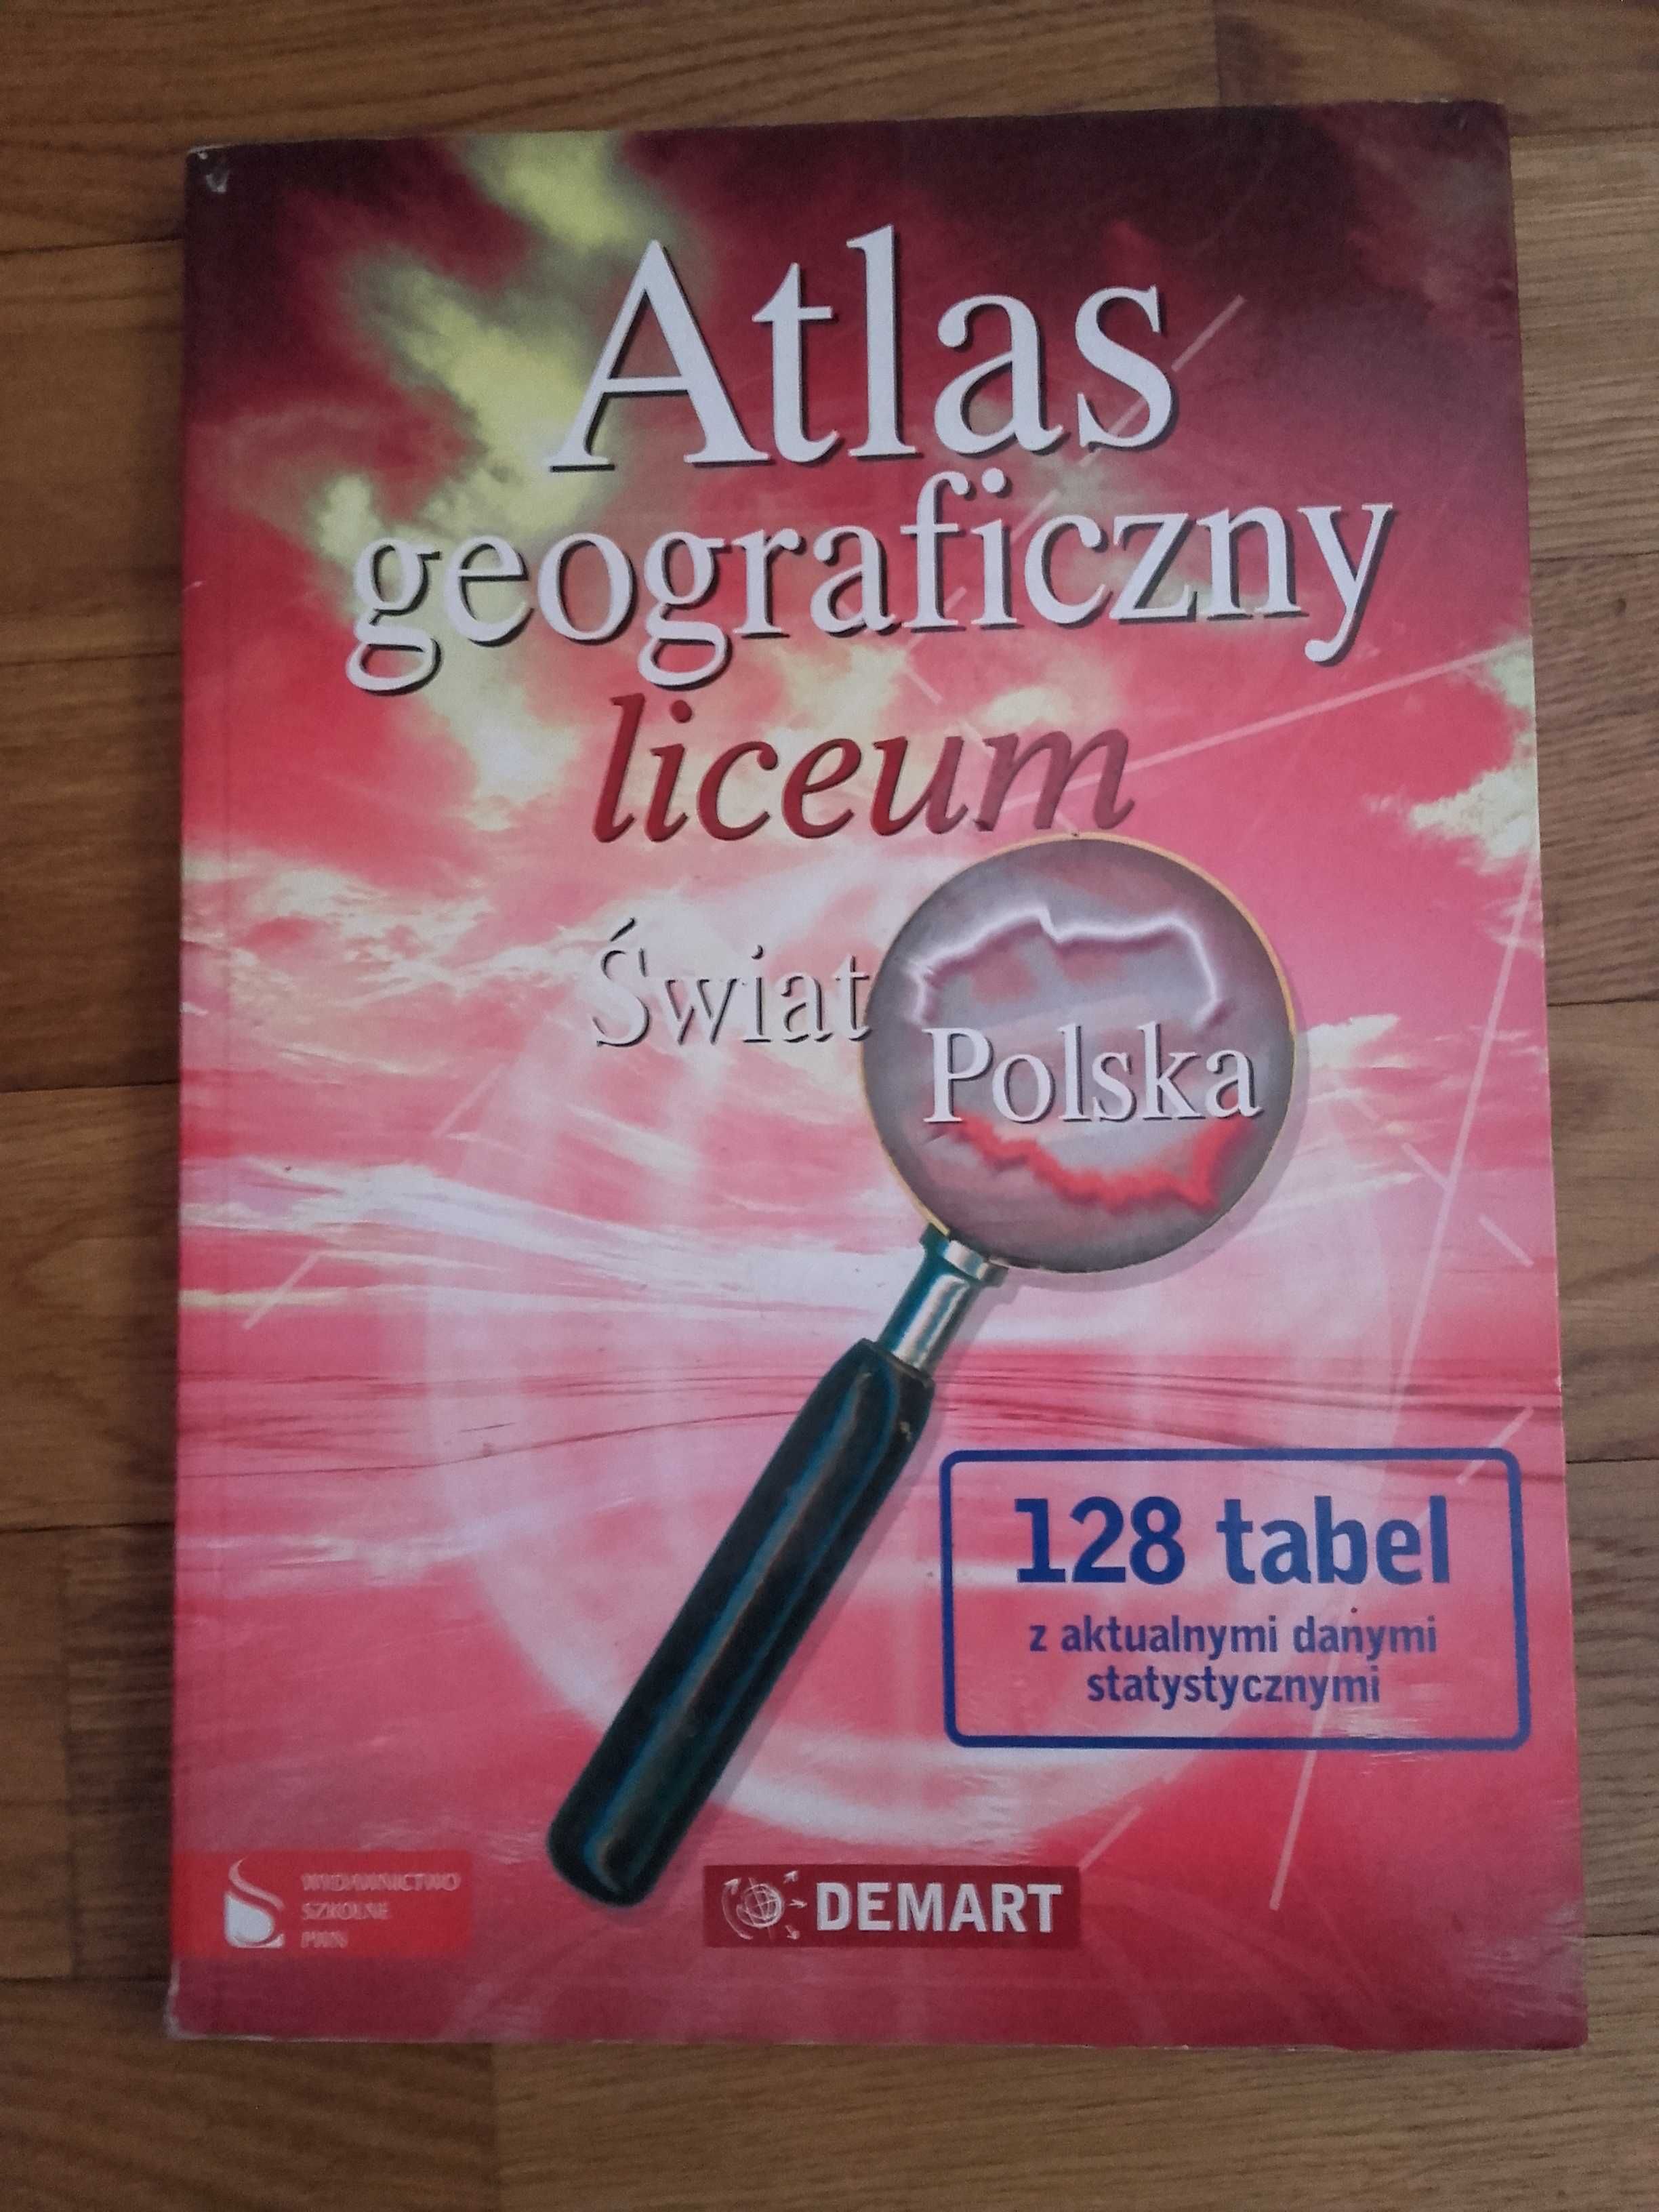 Atlas geograficzny . Liceum  Świat. Polska
Marzena Wieczorek (red)